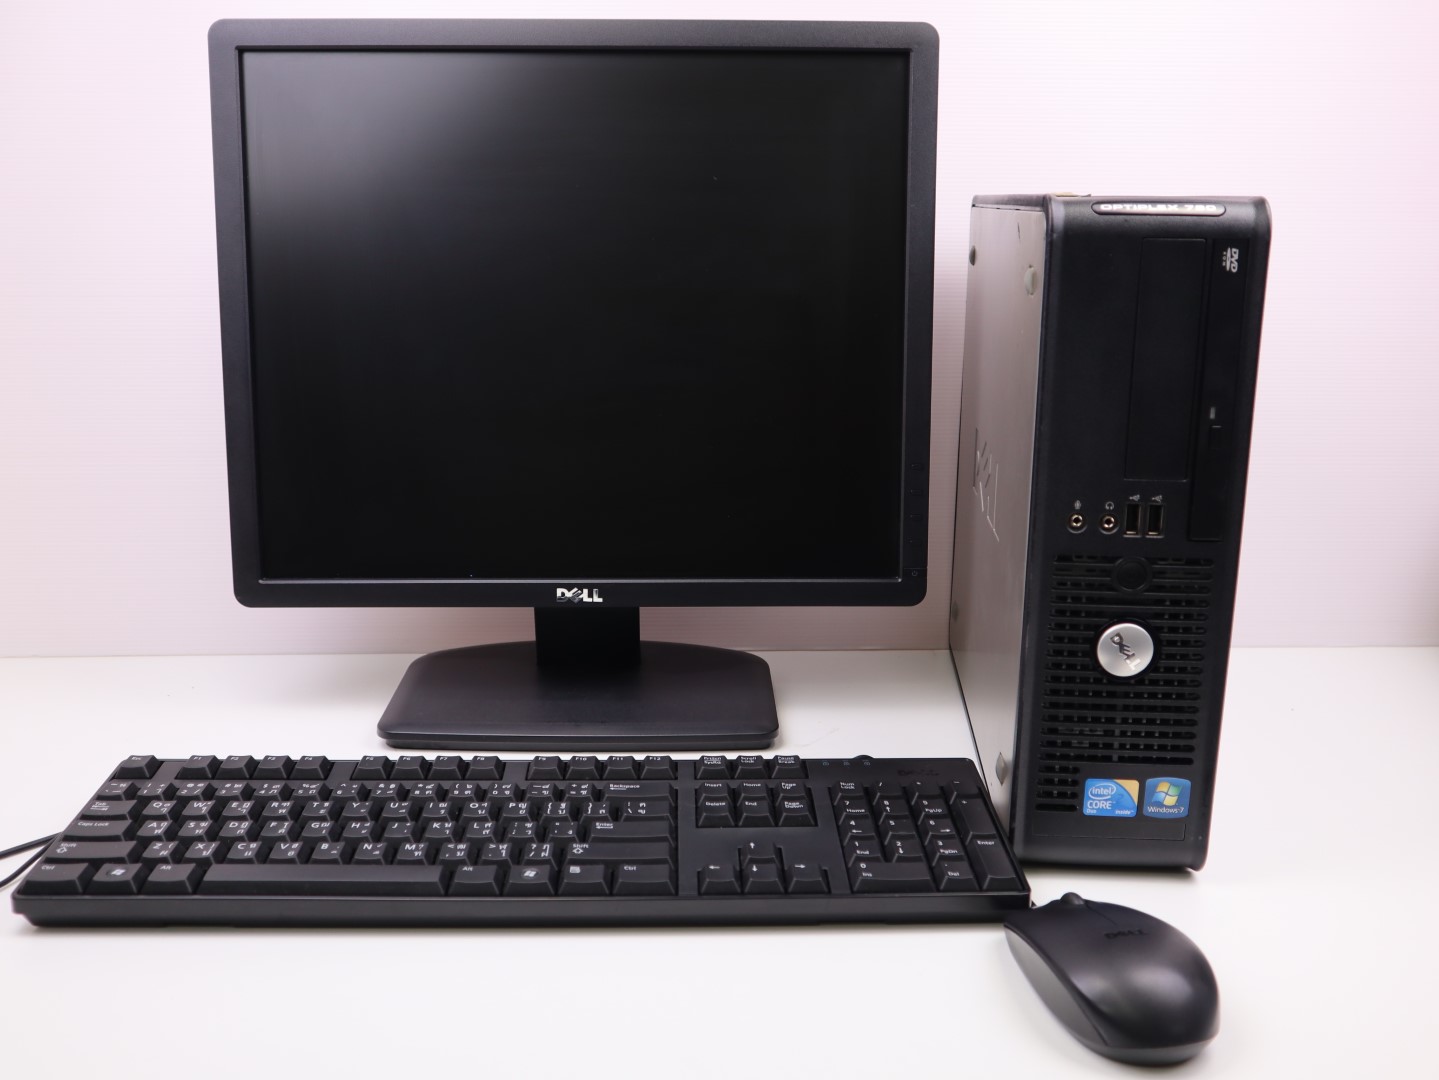 คอมพิวเตอร์ชุด Dell OptiPlex 780 intel DDR3 4GB จอ monitor 19นิ้ว พร้อม คีย์บอร์ด เม้าส์ แผ่นรองเม้าส์